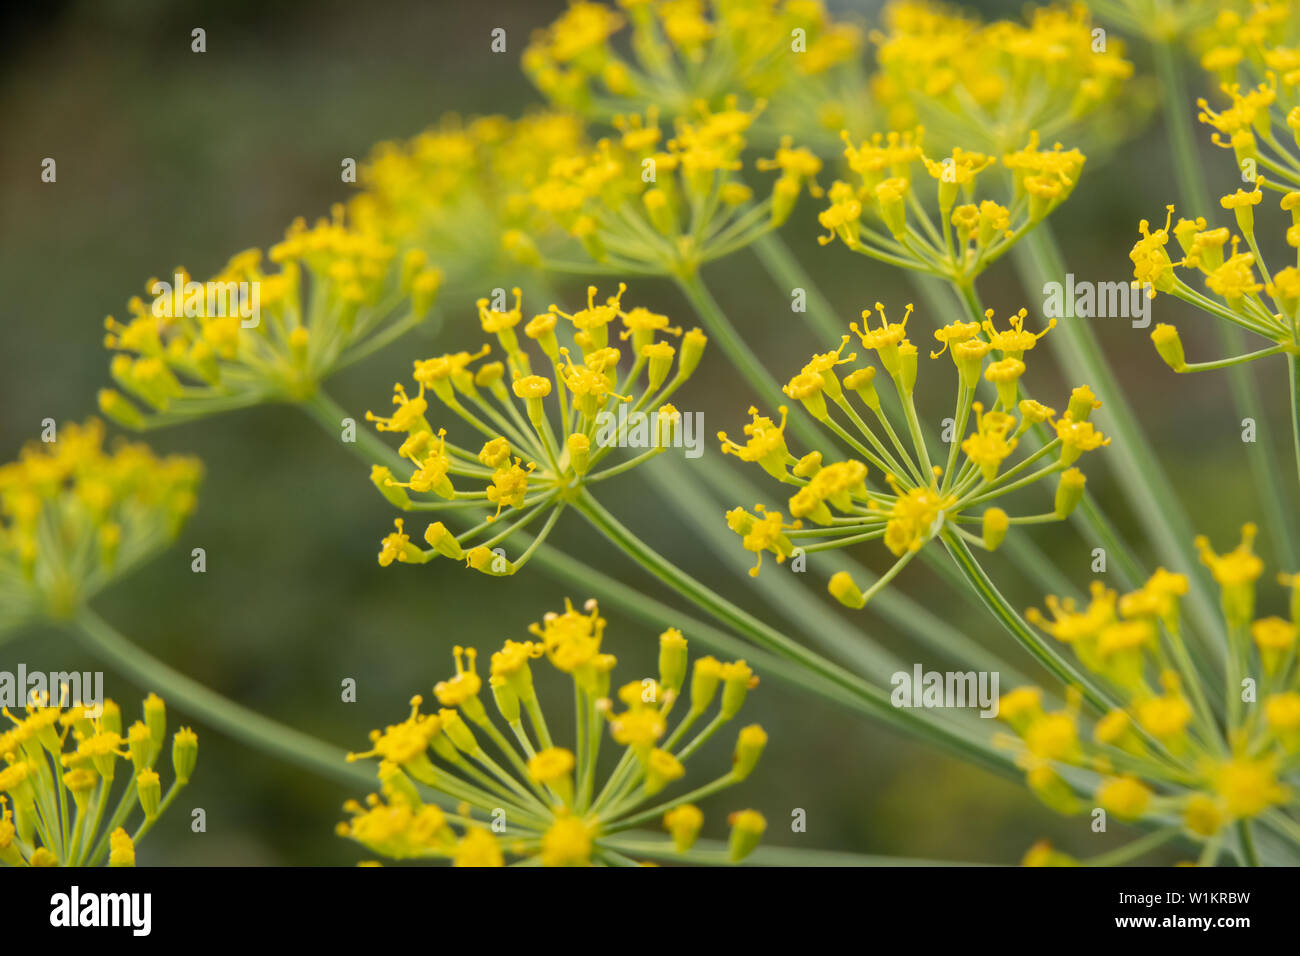 Descripción: Flores de eneldo cerca. Las inflorescencias de semillas de eneldo (Anethum graveolens). Foto de stock